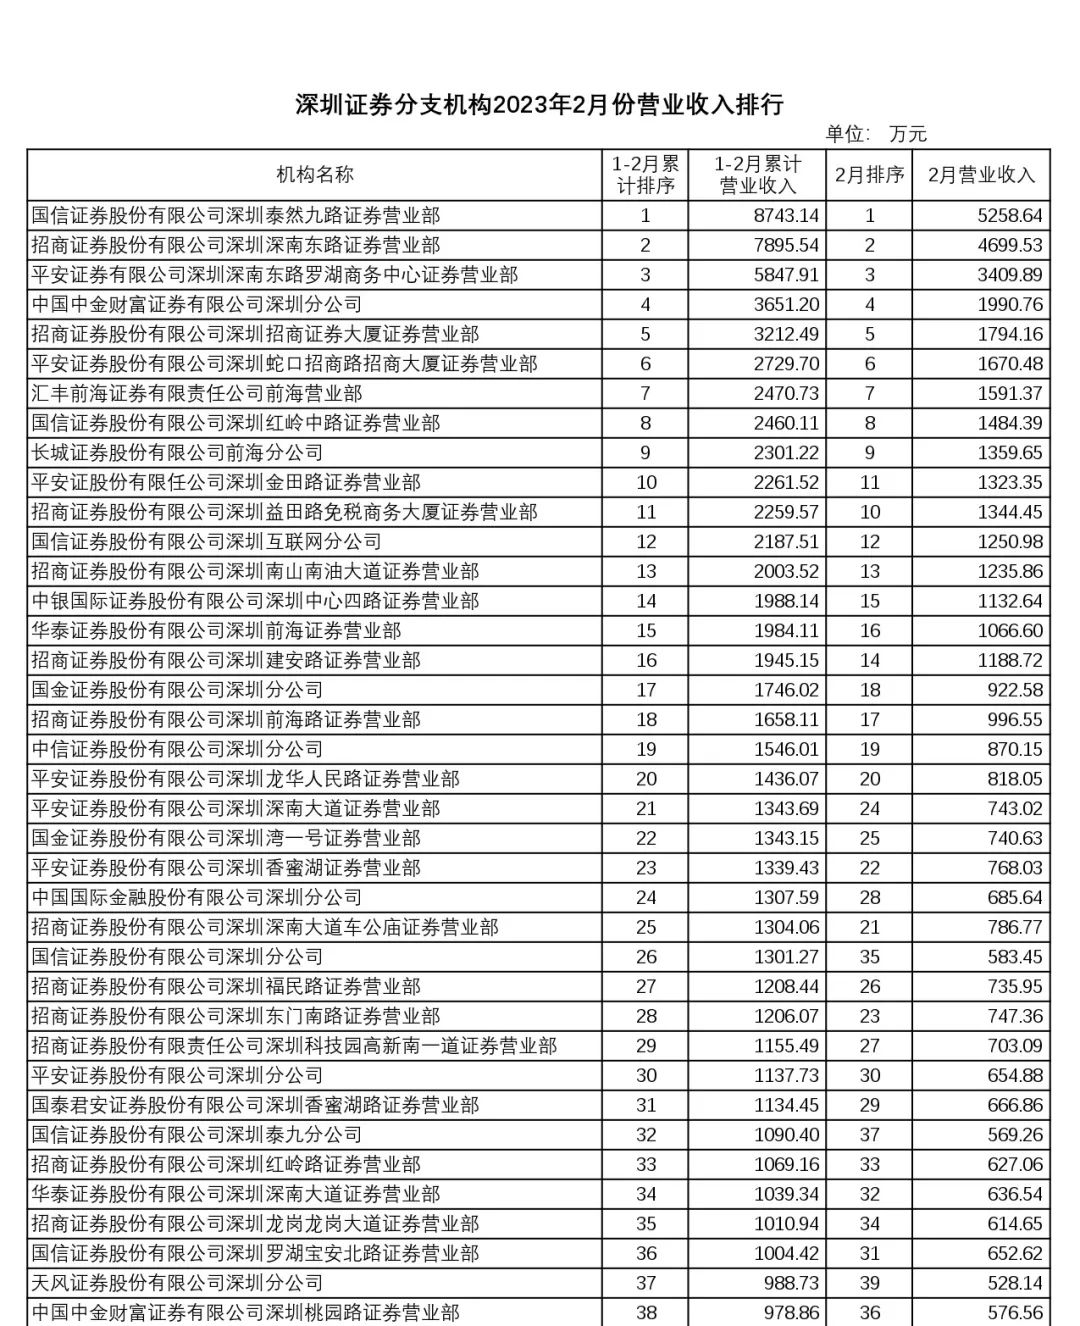 2月深圳证券分支机构利润总额2.84亿元 环比增长816.13%